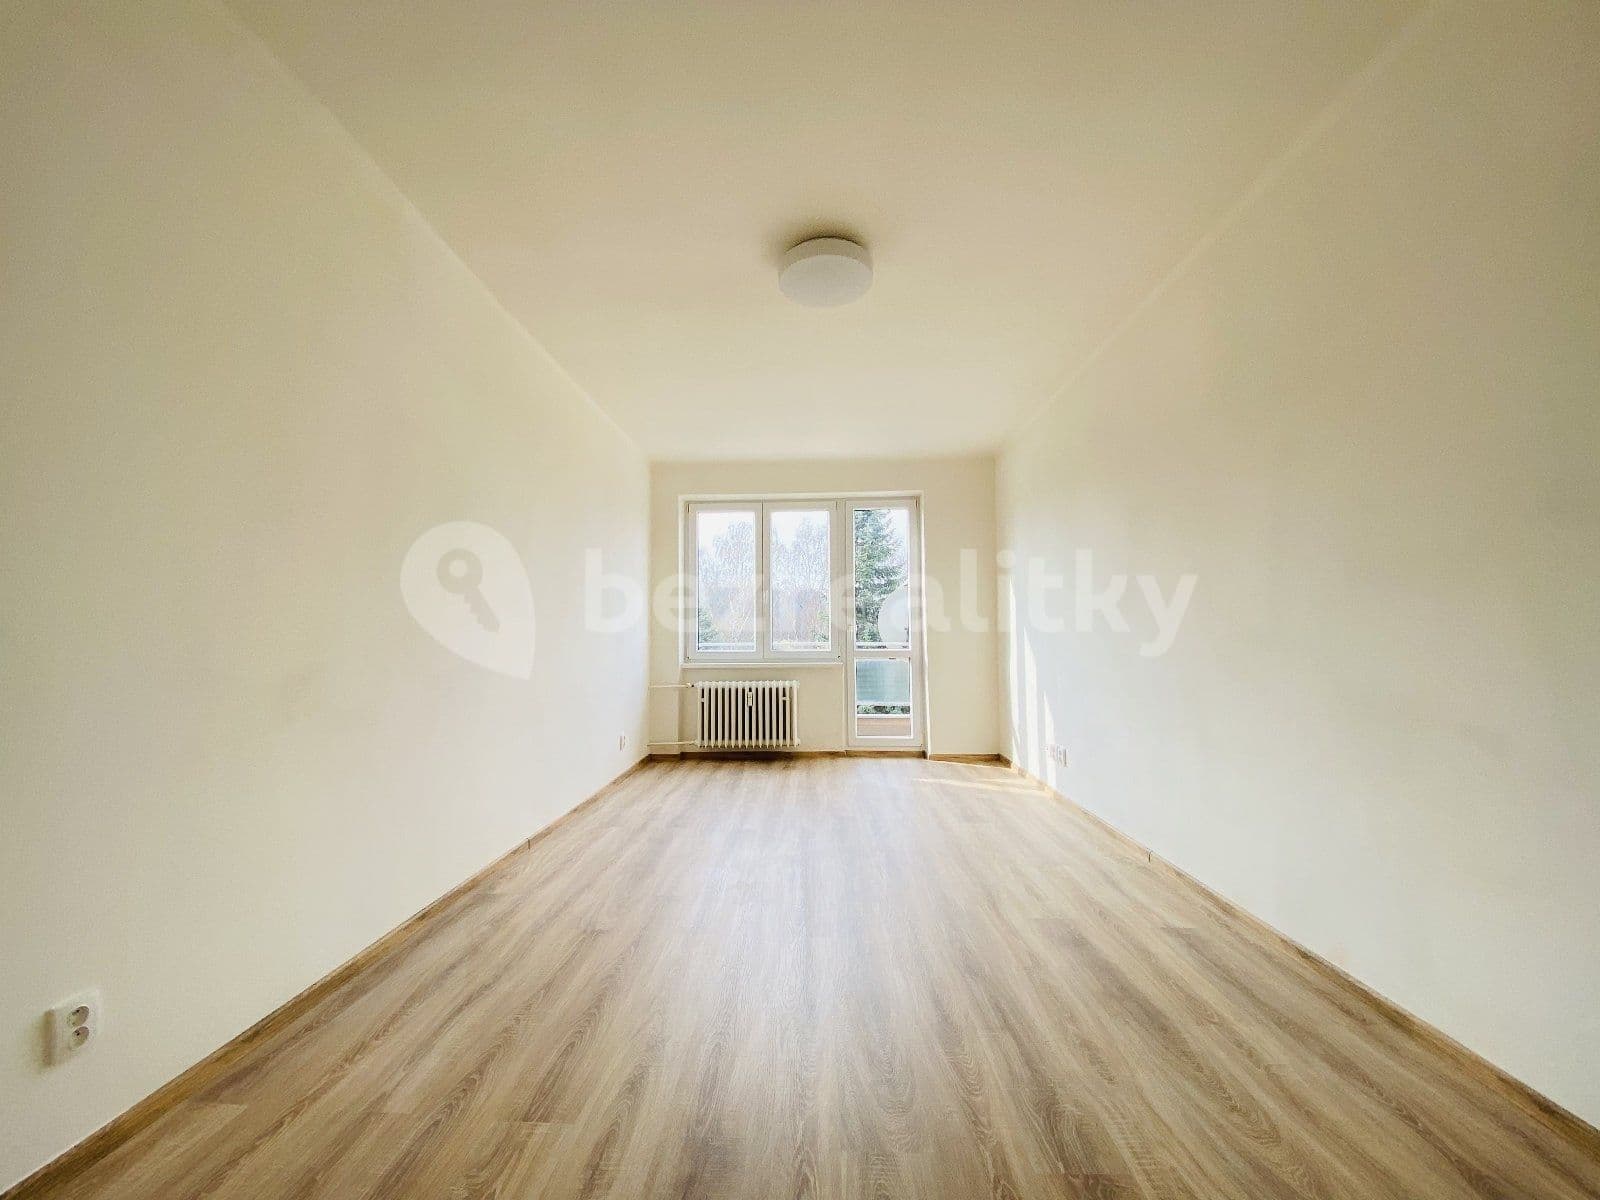 2 bedroom flat to rent, 50 m², U Hájenky, Ostrava, Moravskoslezský Region